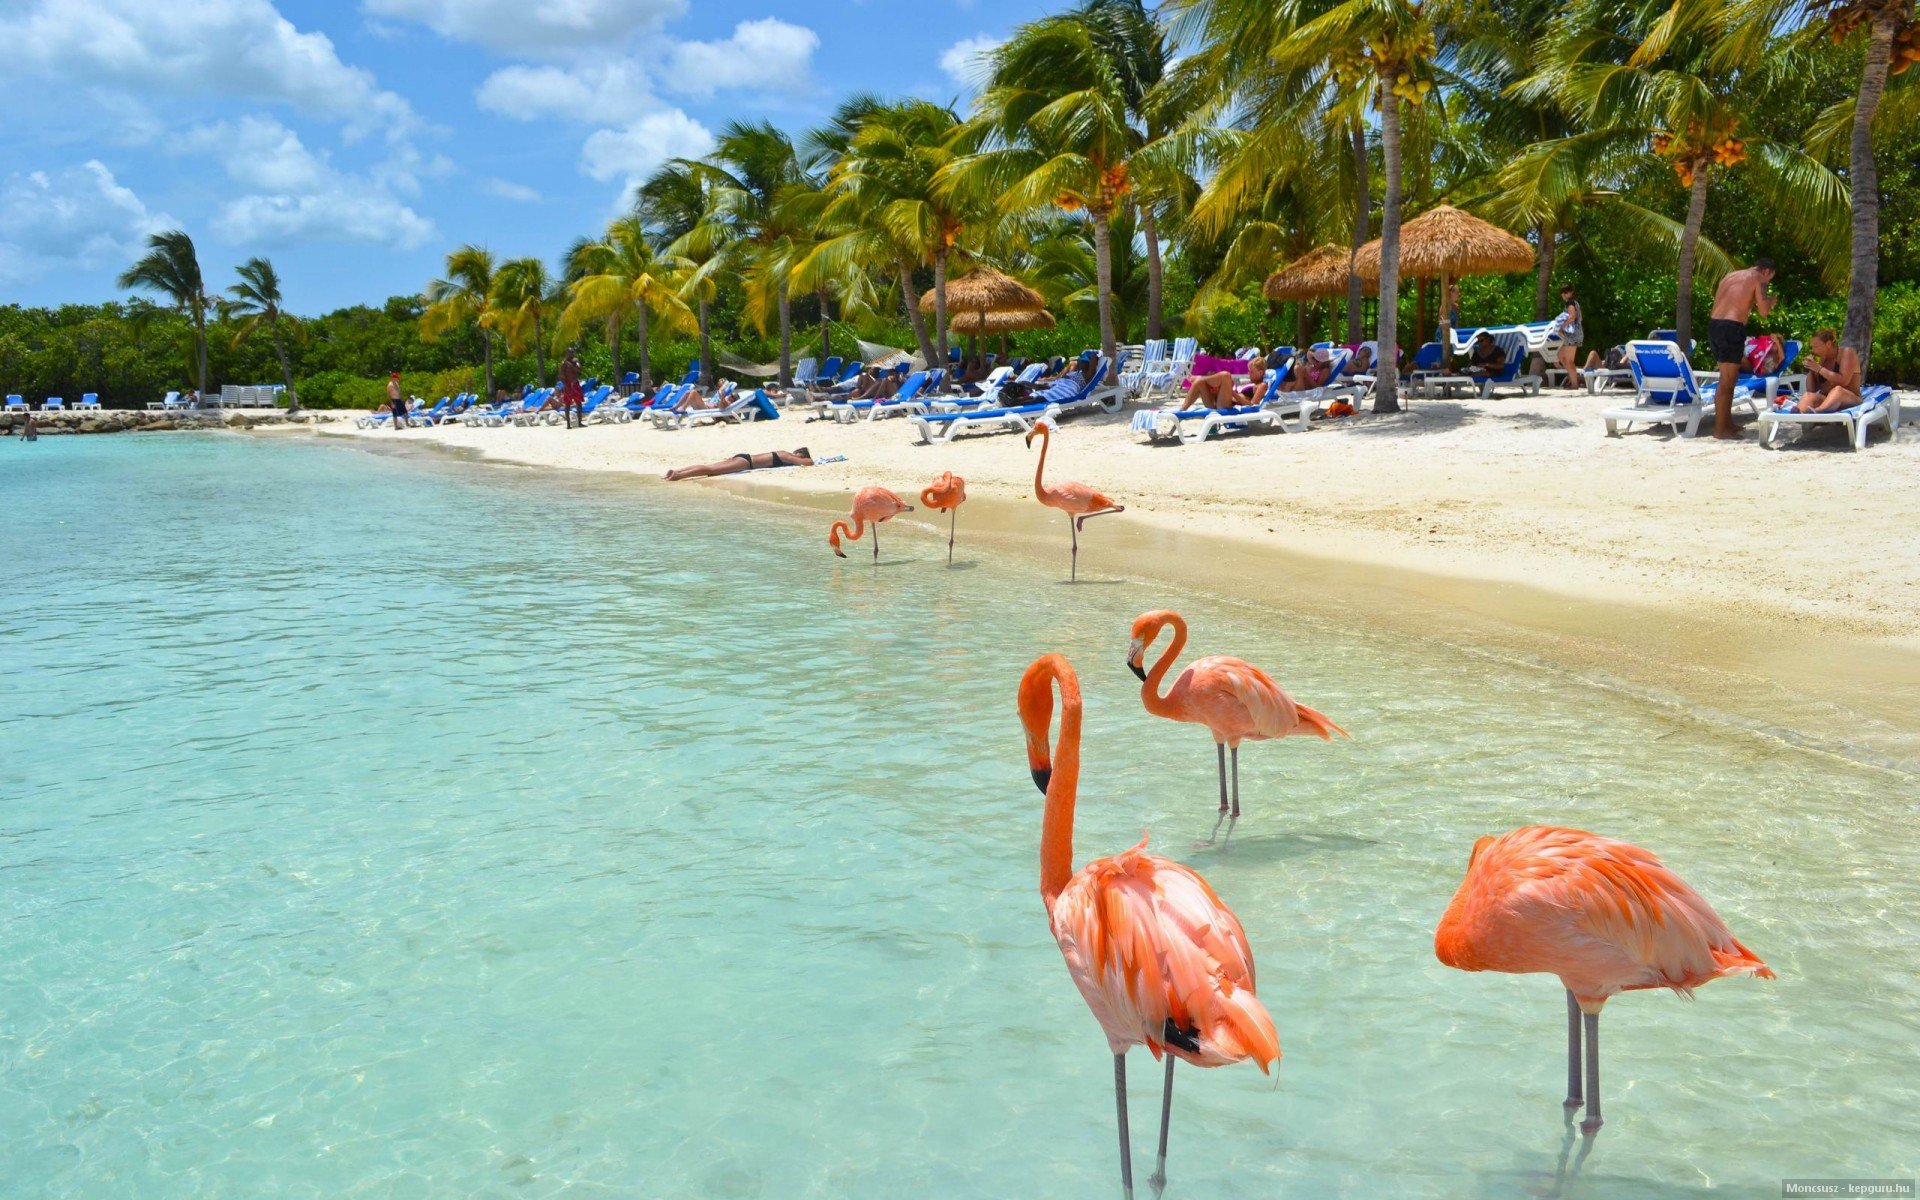 Fondos Fotograficos Mehofoto Summer Beach Tropical Flamingo 